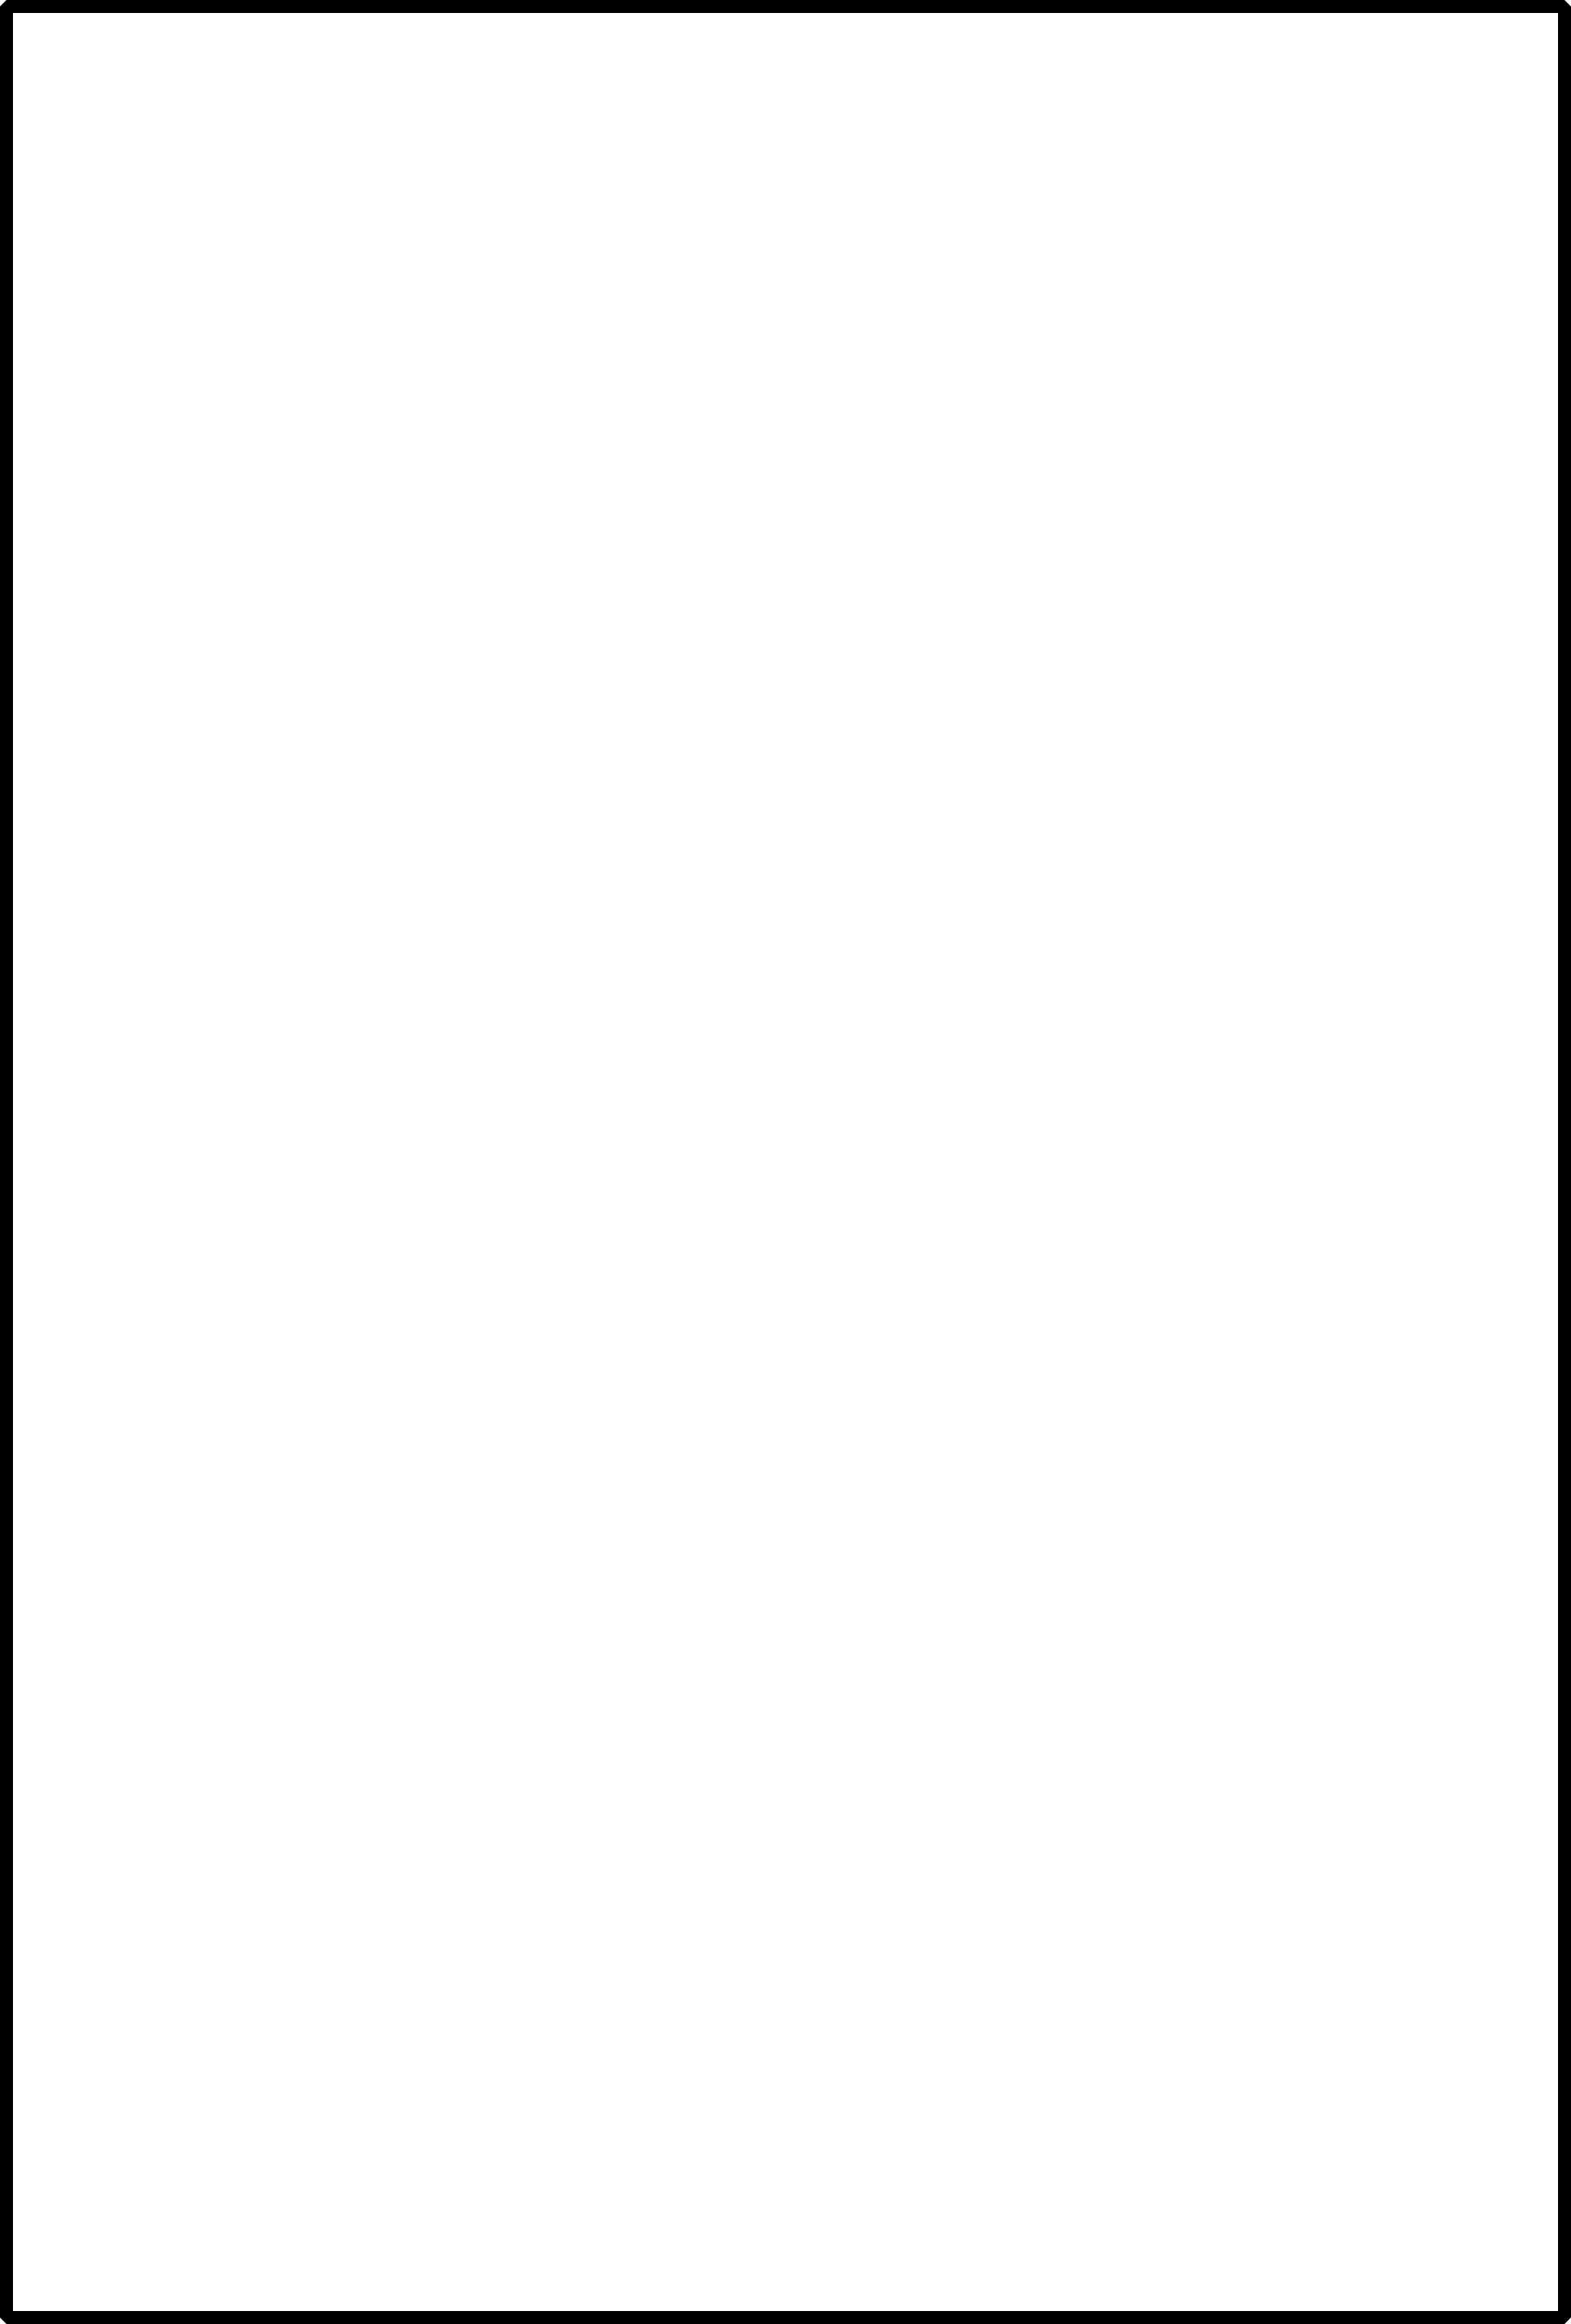 Imagem de alta qualidade retângulo de borda preta PNG